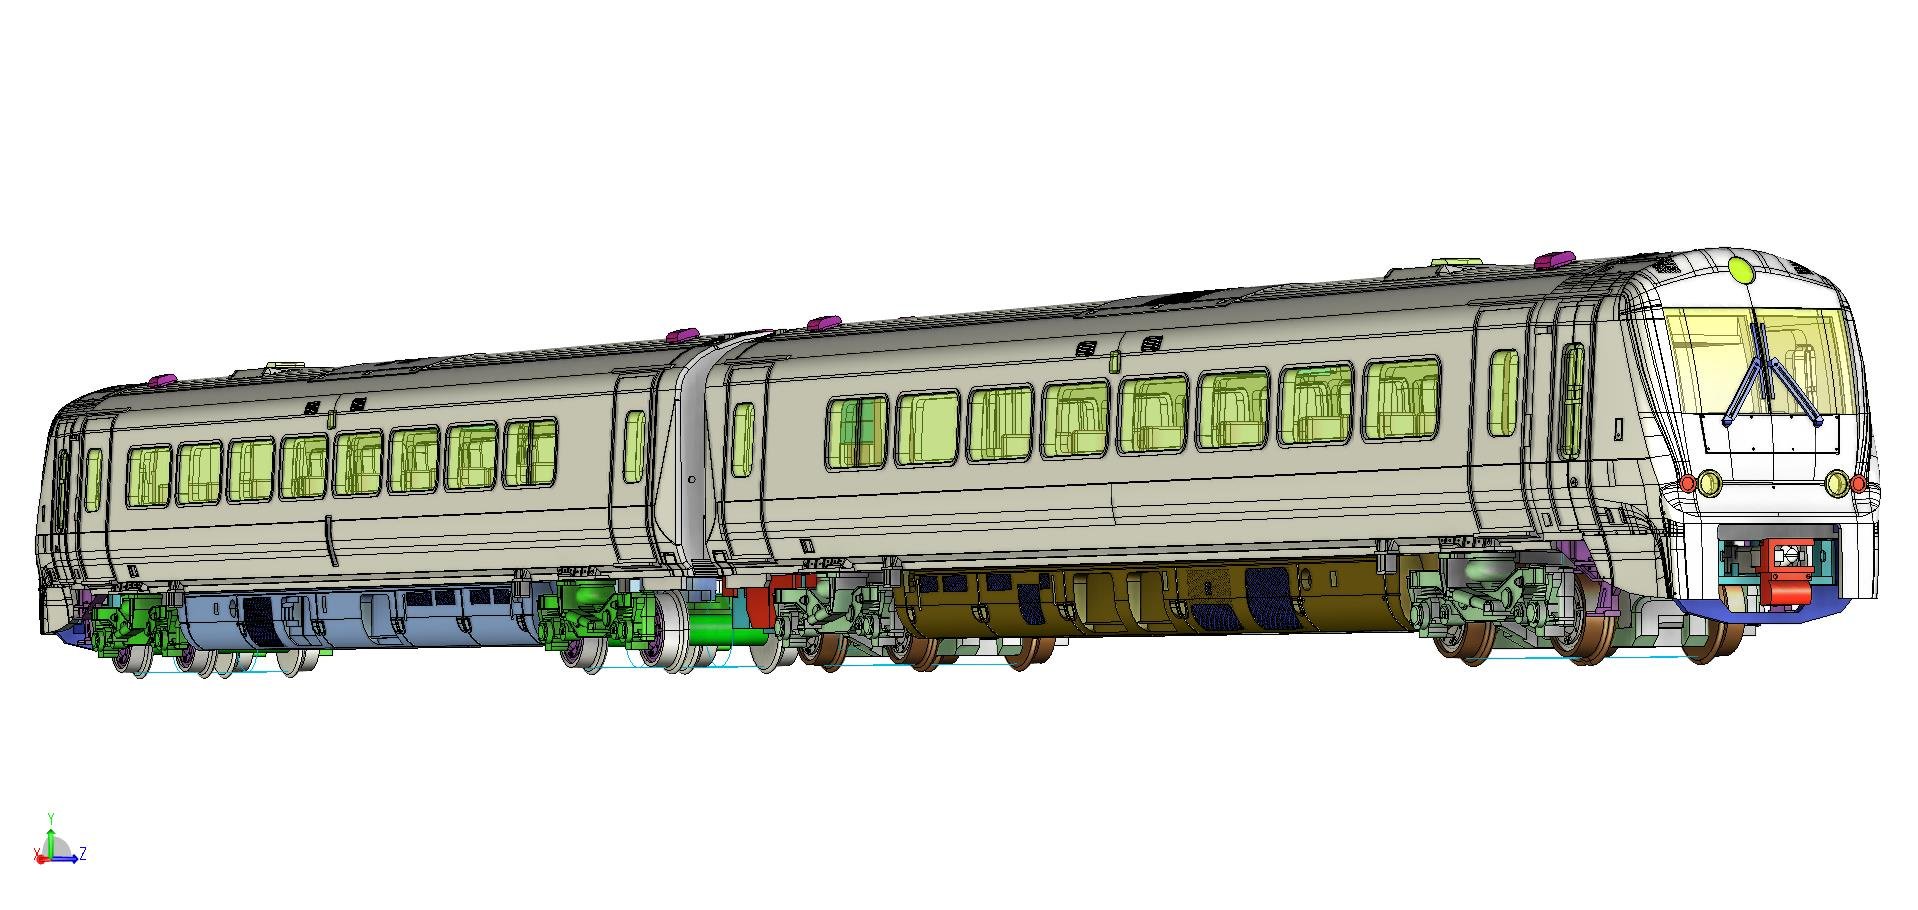 hm179_revolution_trains_class_175_set1_view5a